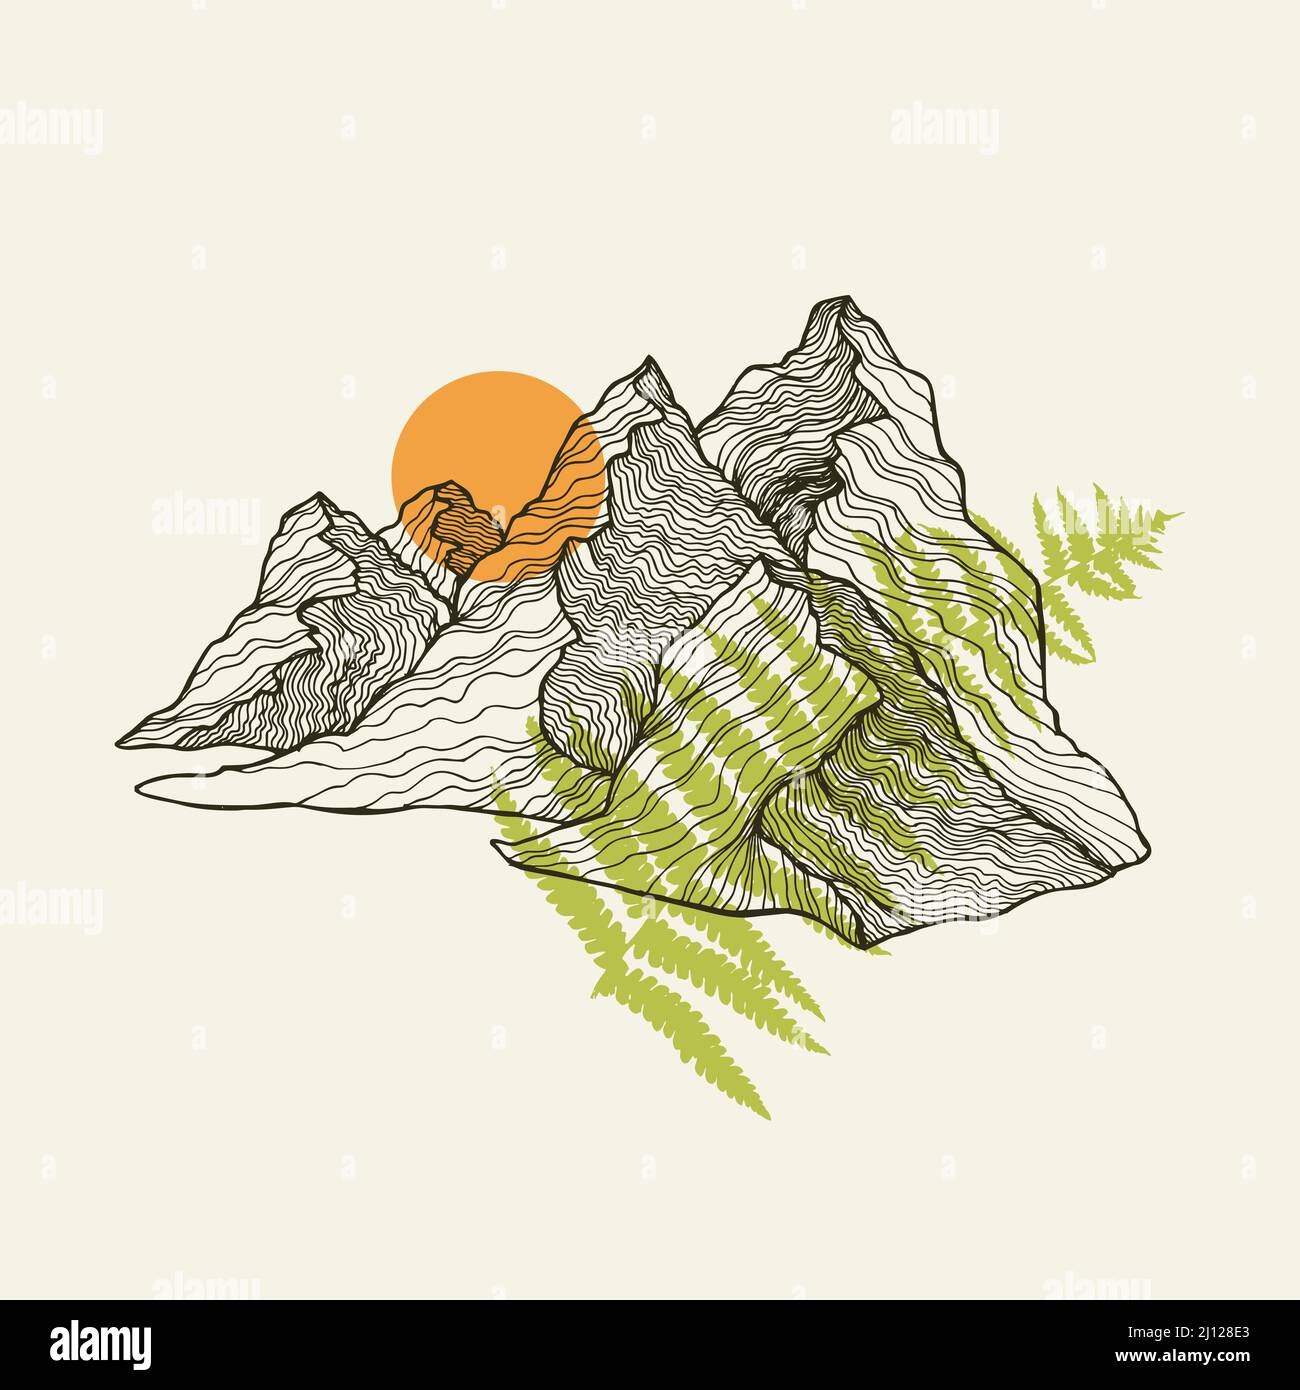 Vektorgrafik für Berge, Sonne und Farnlinie. Vektor-Illustration für Textildrucke, Karten, Design, Logo. Stock Vektor